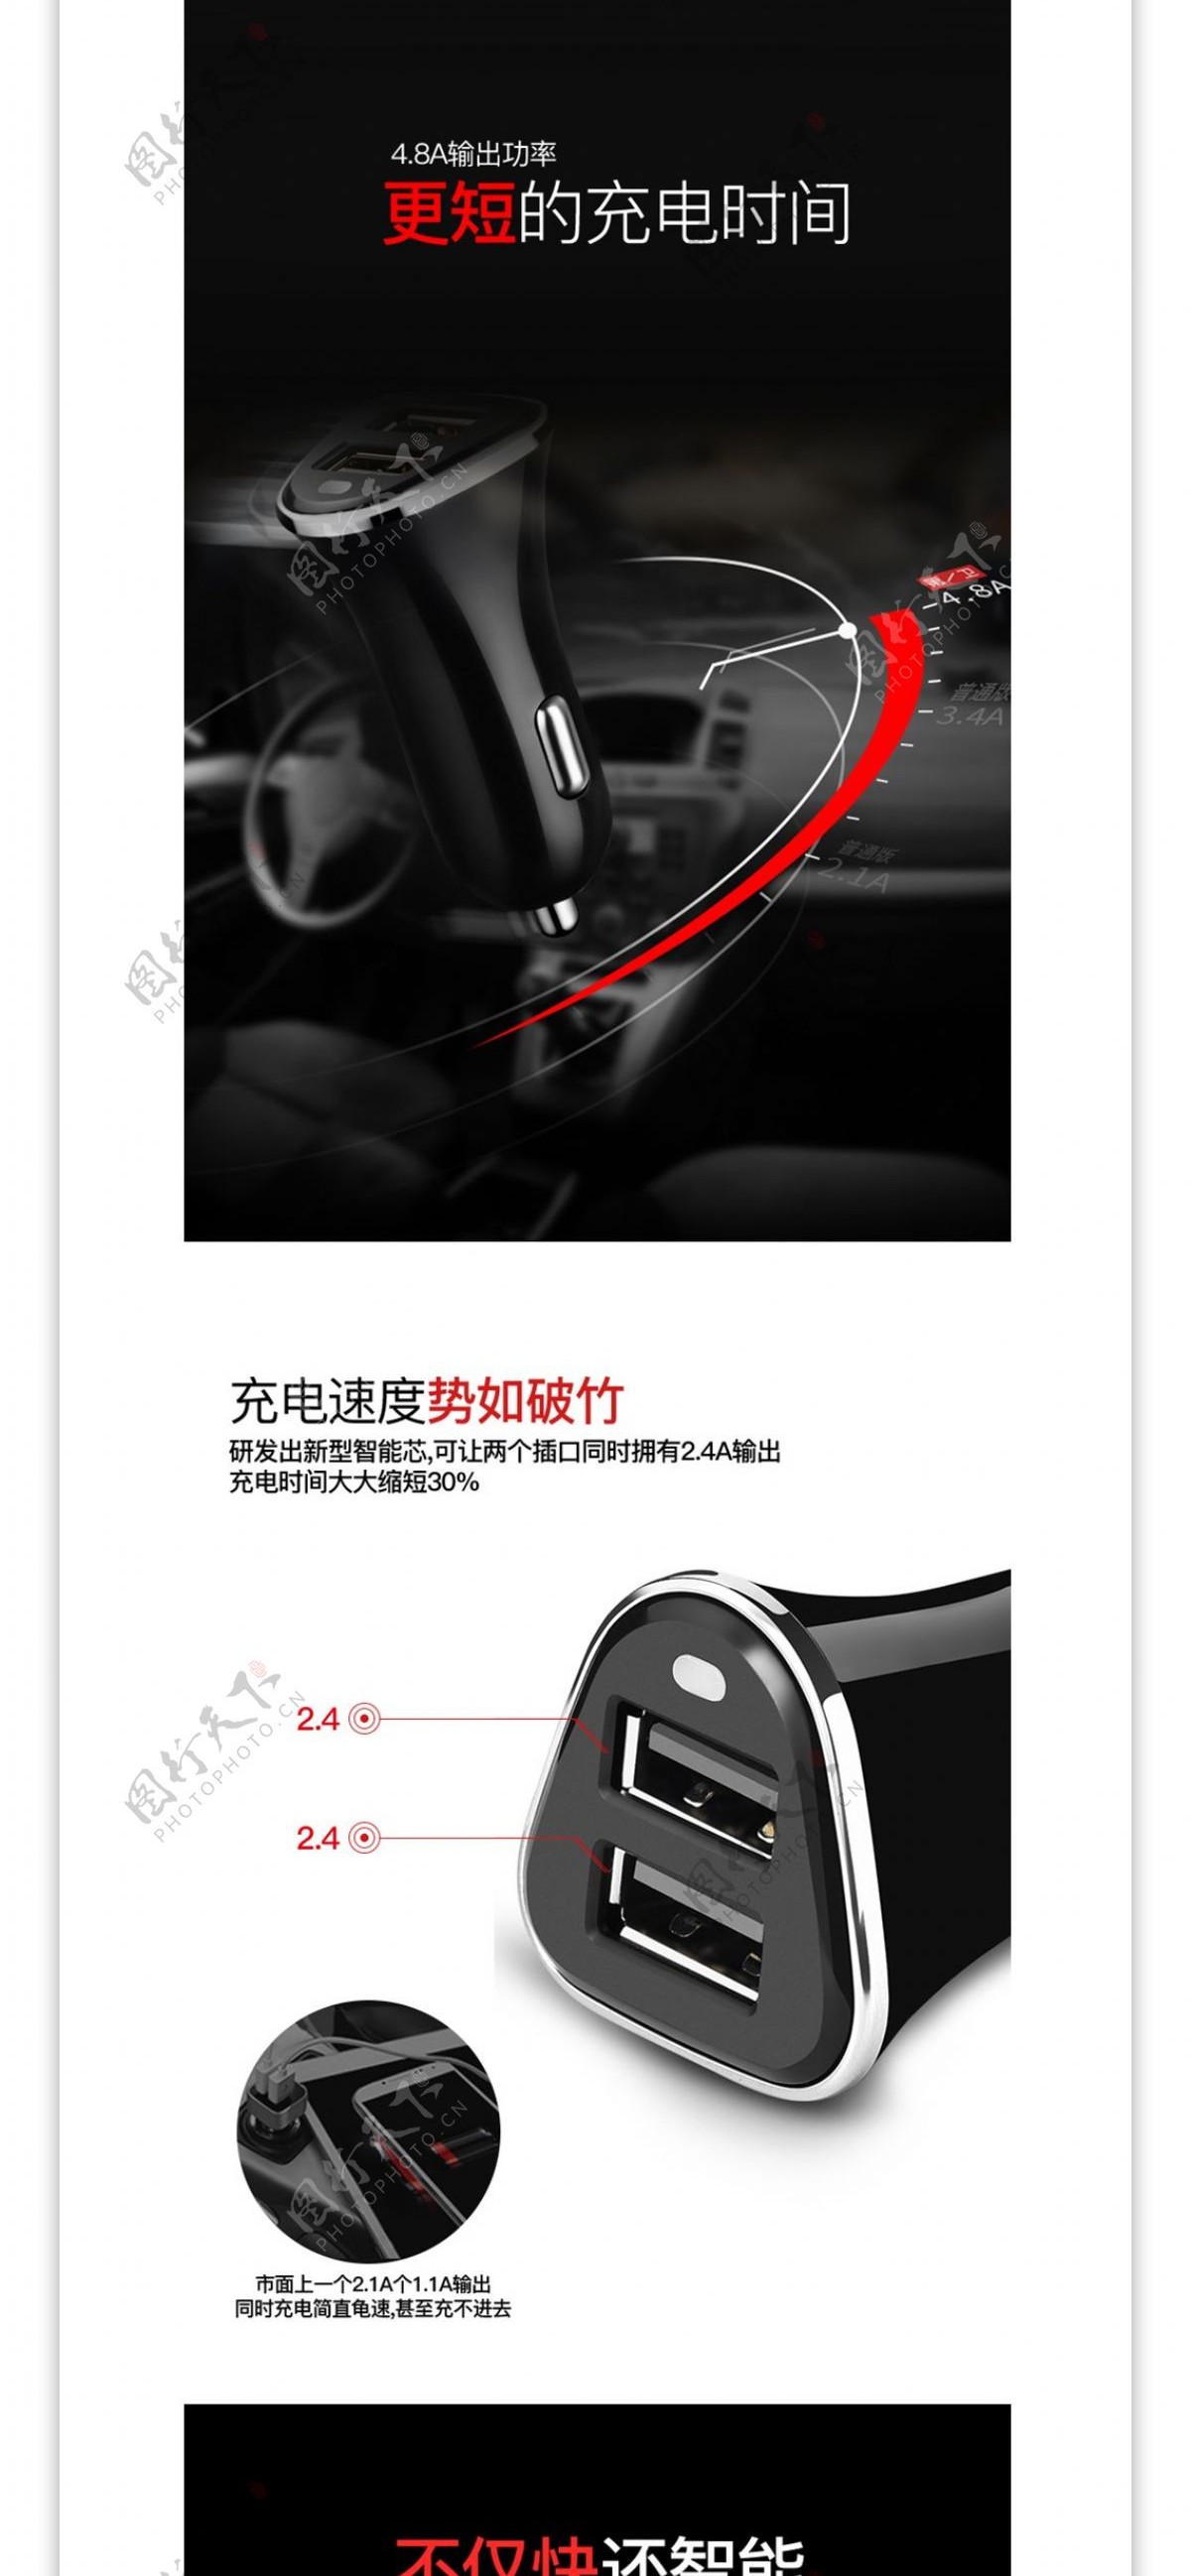 3C数码汽车车载充电器活动促销详情页模板